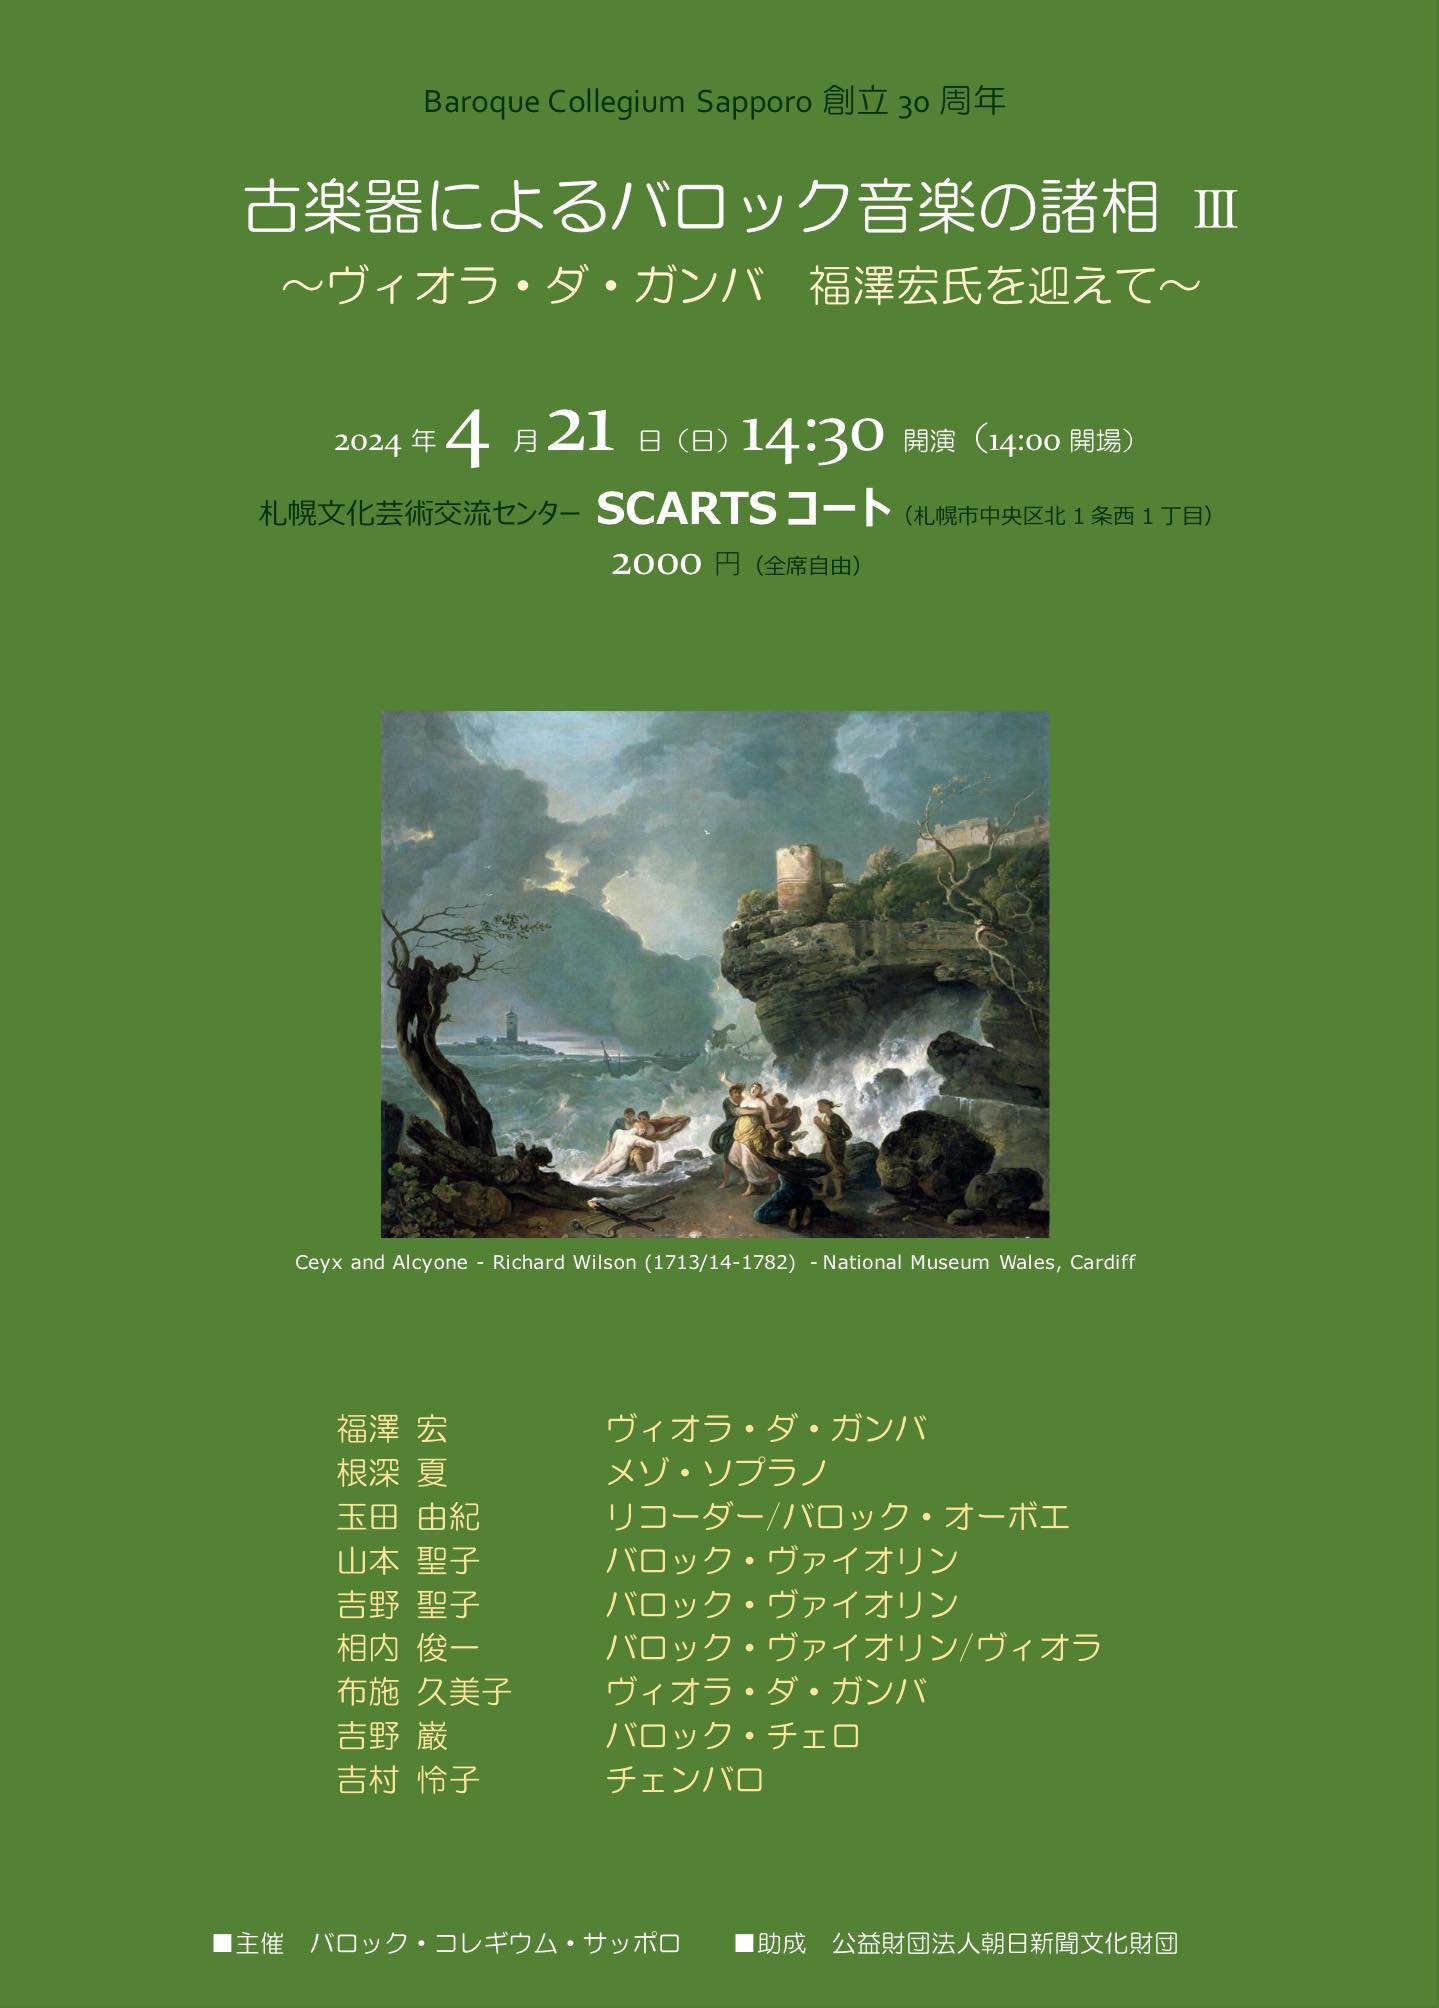 古楽器によるバロック音楽の諸相 Vol.3　～ウィオラ・ダ・ガンバ 福澤宏氏を迎えて～サムネイル画像